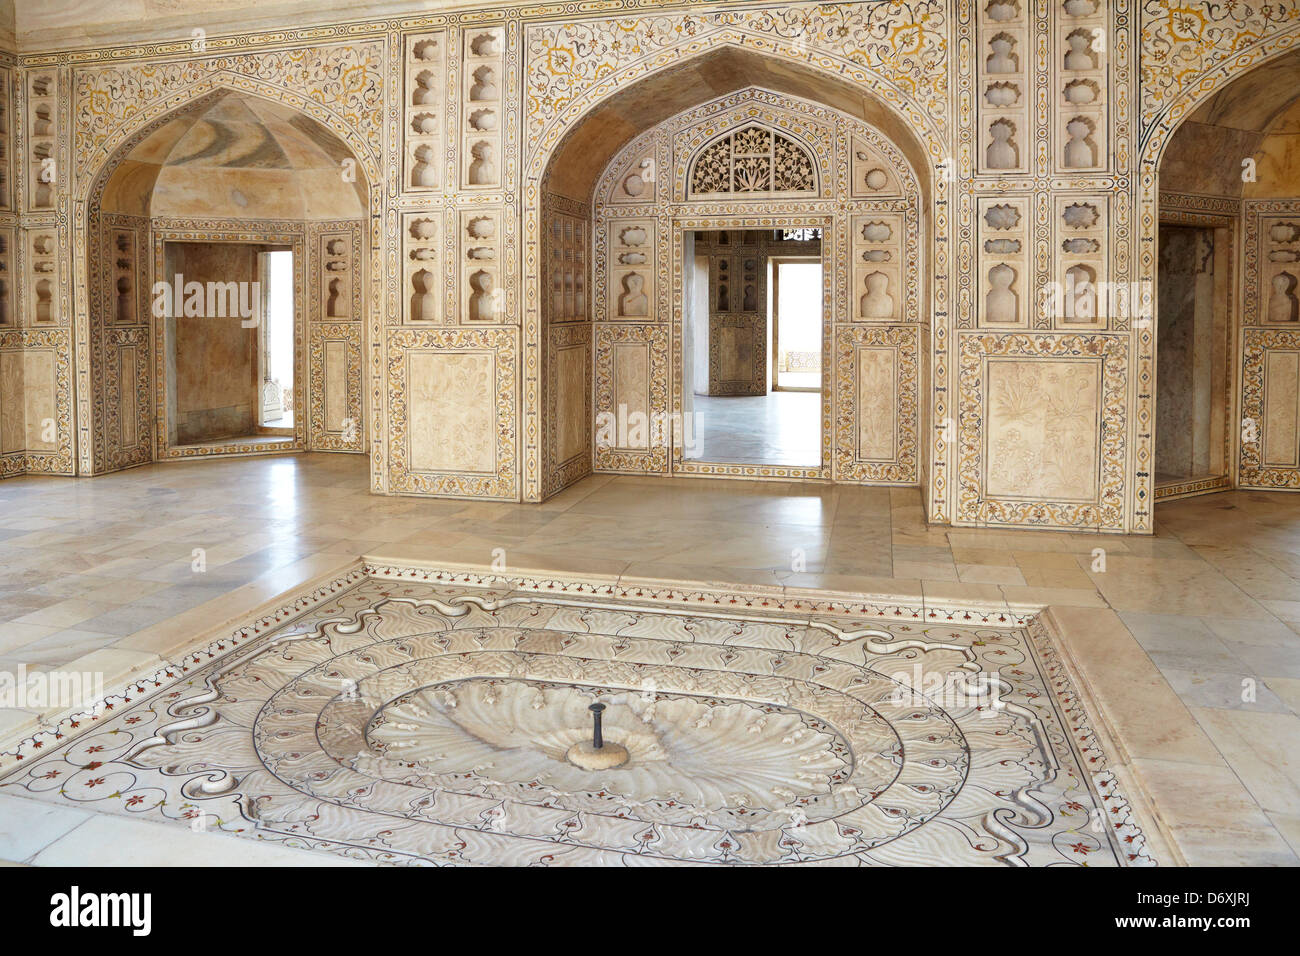 Agra, le Fort Rouge - l'intérieur de l'Khas Mahal pavillon central avec fontaine intérieure et reliefs en pierre, Agra, Inde Banque D'Images